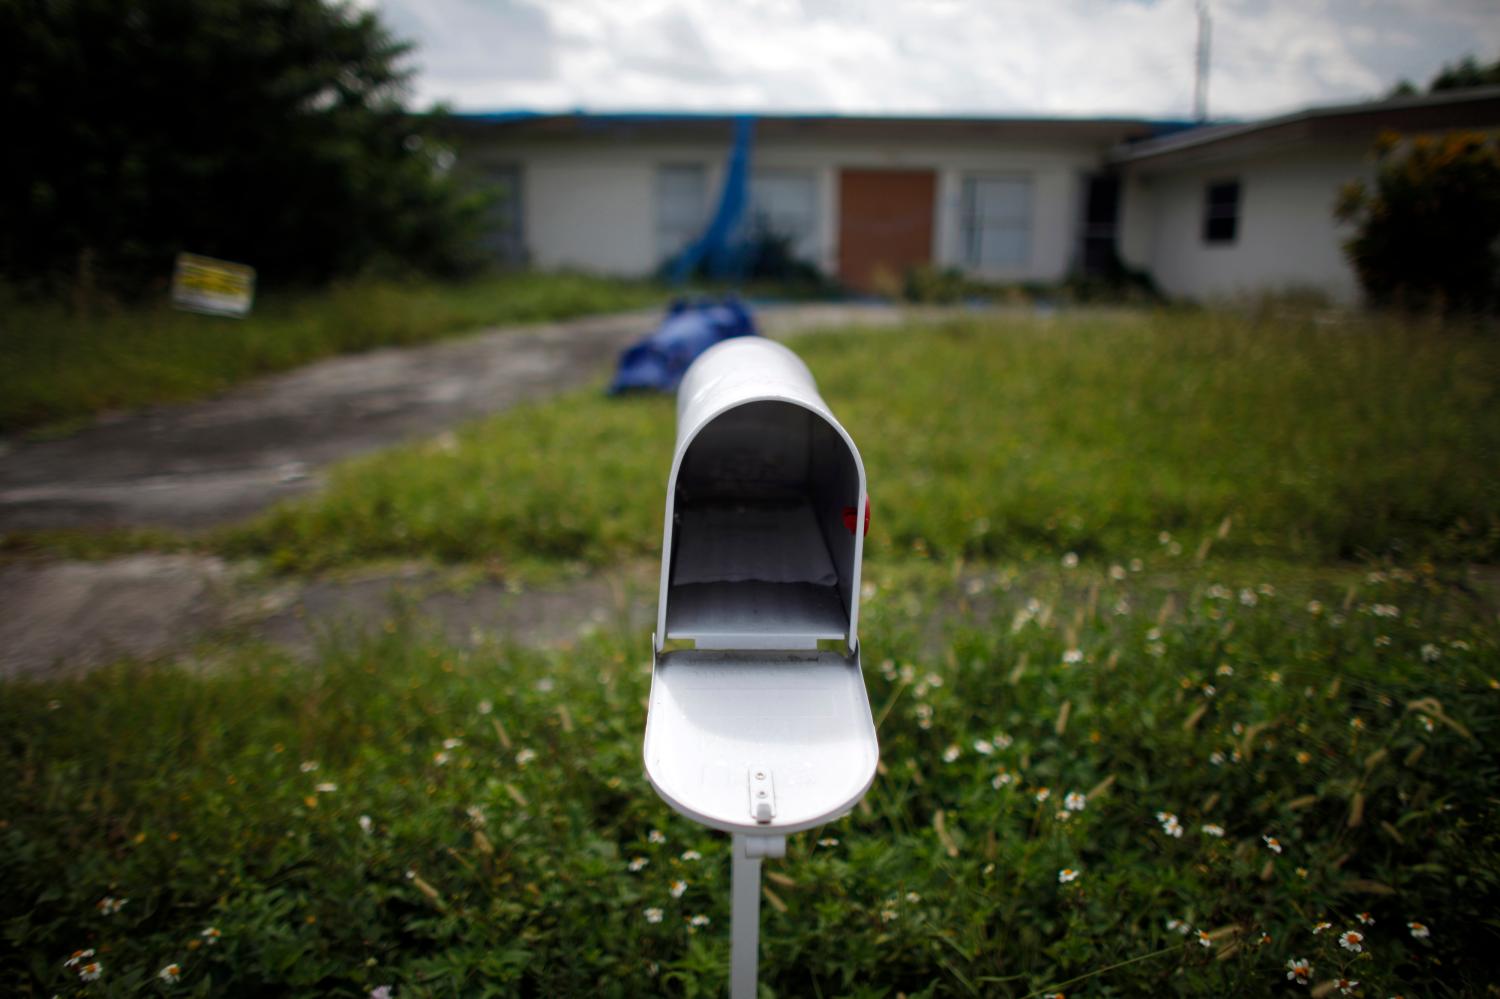 An empty mailbox